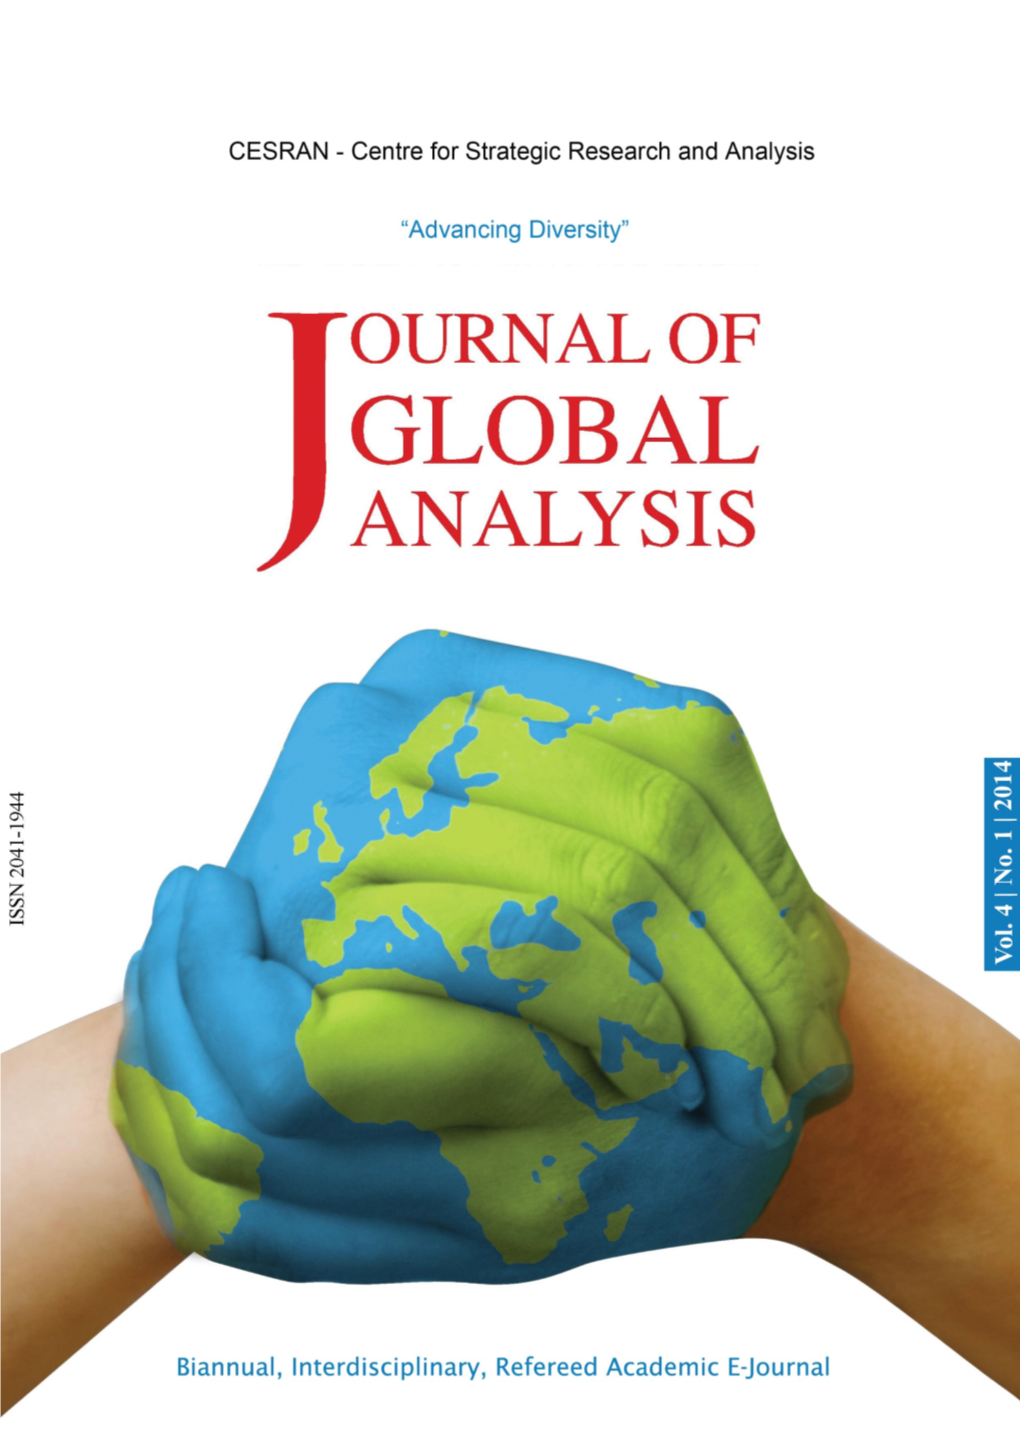 Journal of Global Analysis Journal of Global Analysis